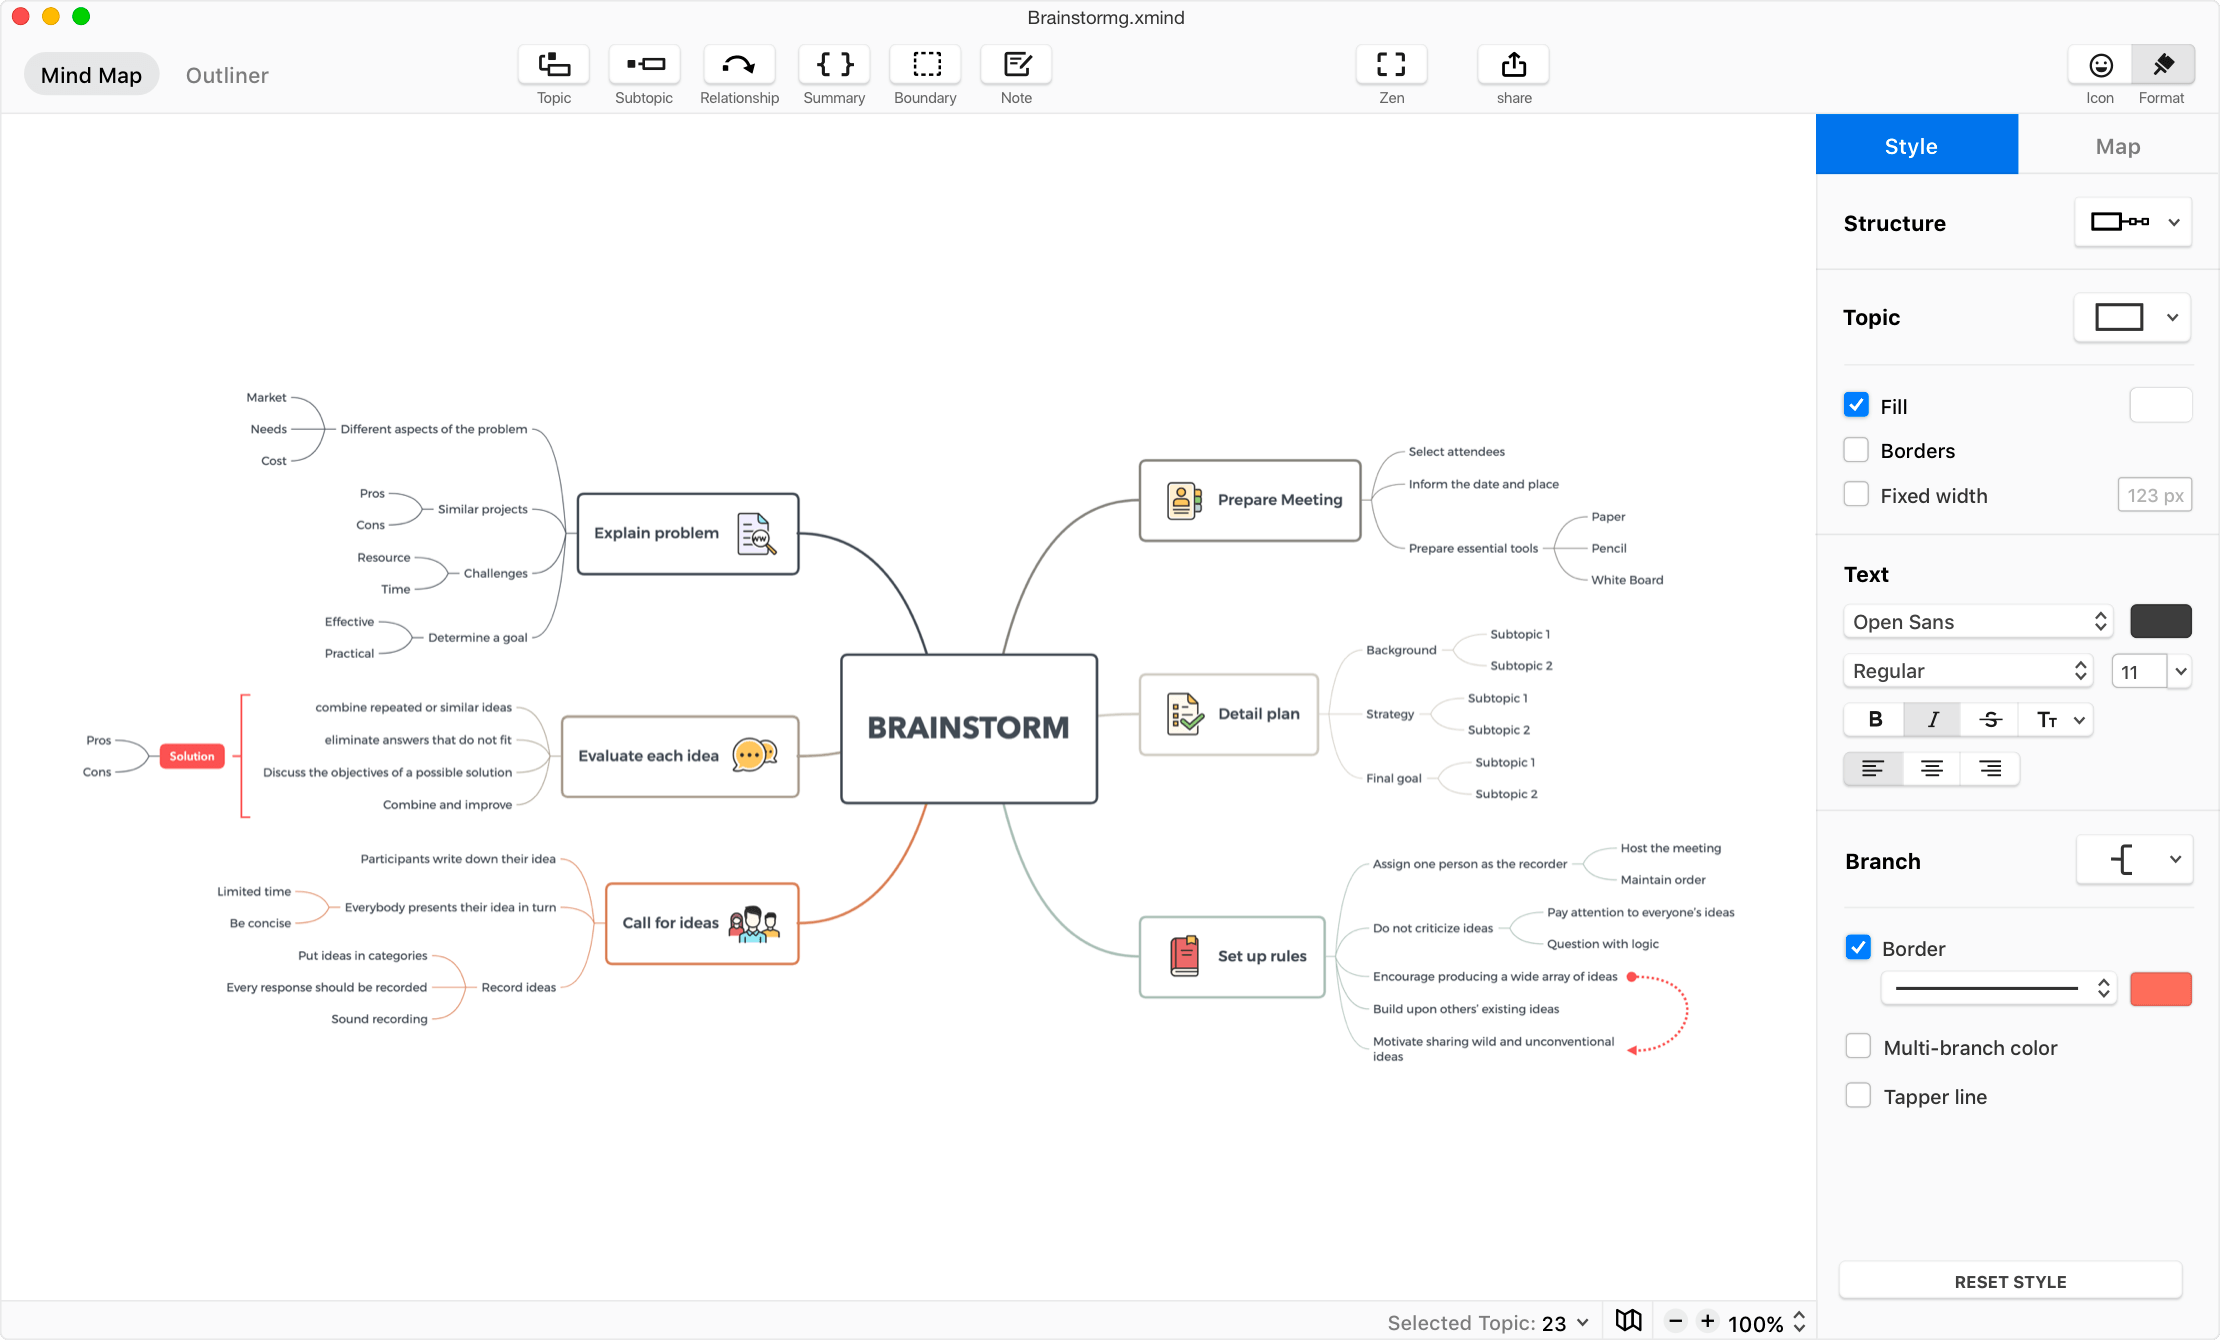 Tại sao nên sử dụng XMind cho công việc của bạn? Đó là một công cụ tuyệt vời để tạo ra sơ đồ tư duy, biểu đồ, lập kế hoạch và quản lý dự án. Hãy xem hình ảnh để khám phá những tính năng và lợi ích của XMind nhé!